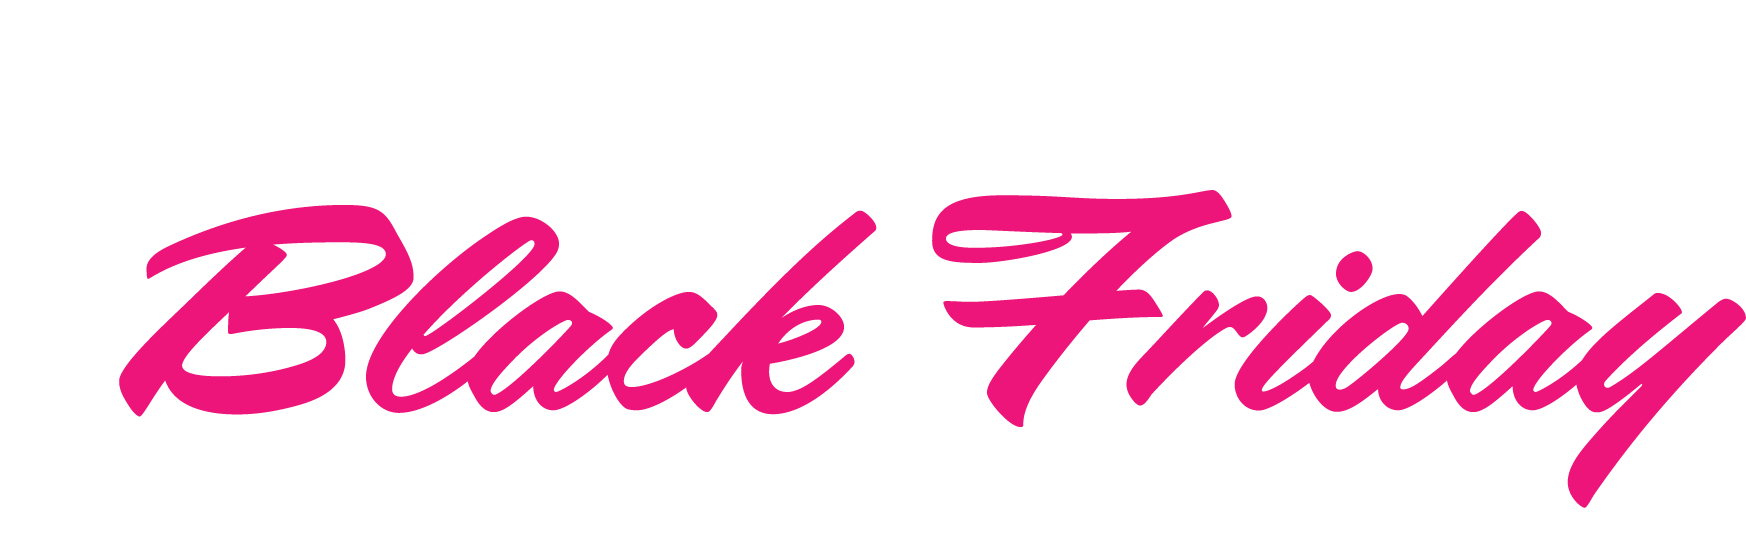 2022_BlackFriday_Logo_v01